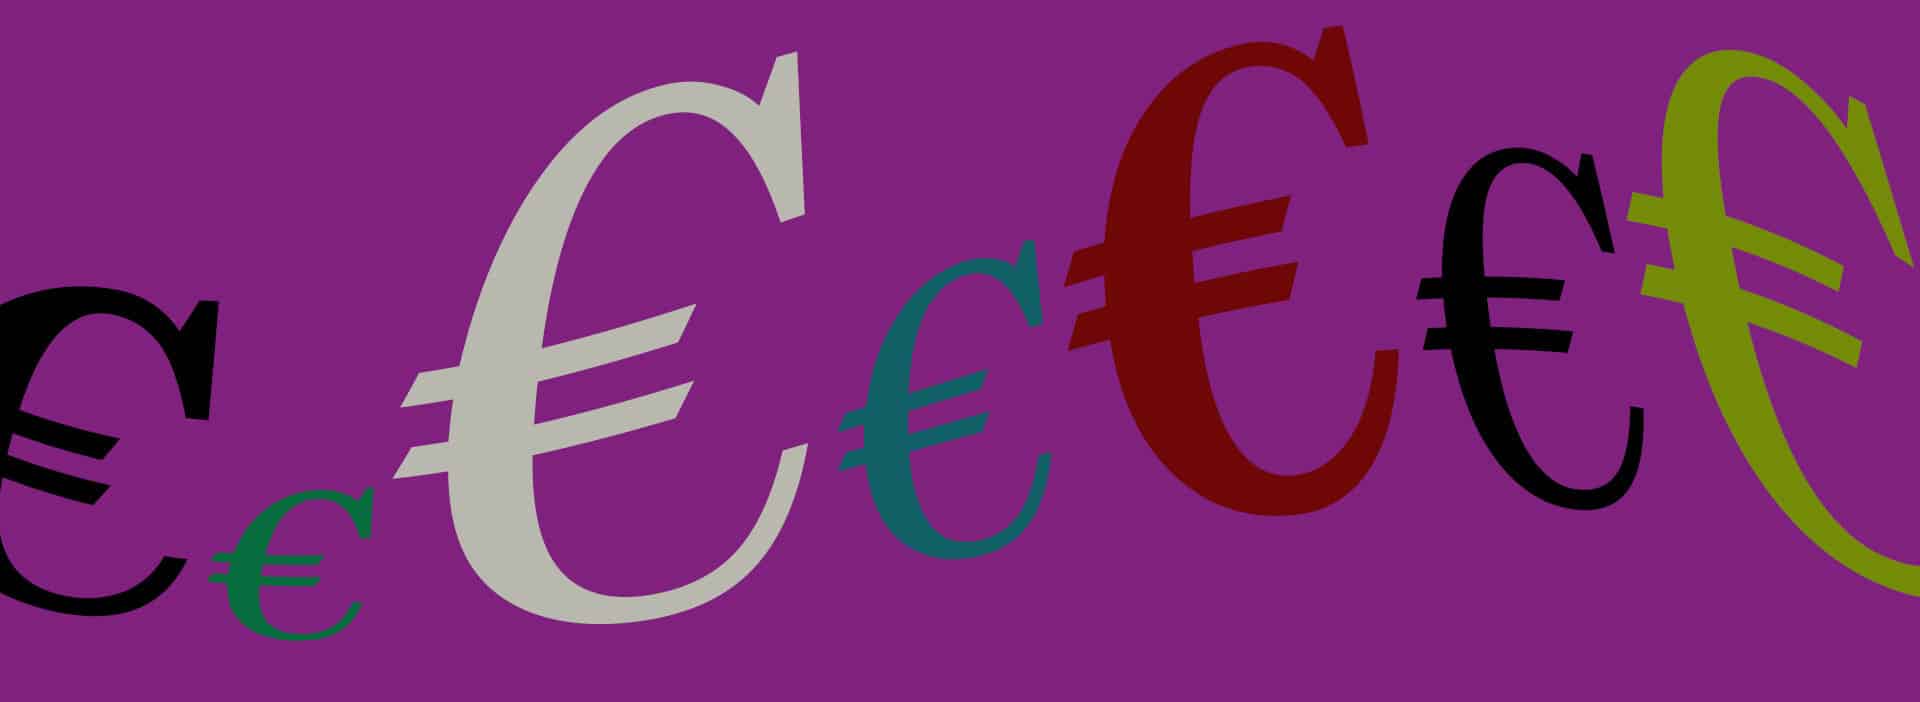 eurot toimeentulo kuvituskuva